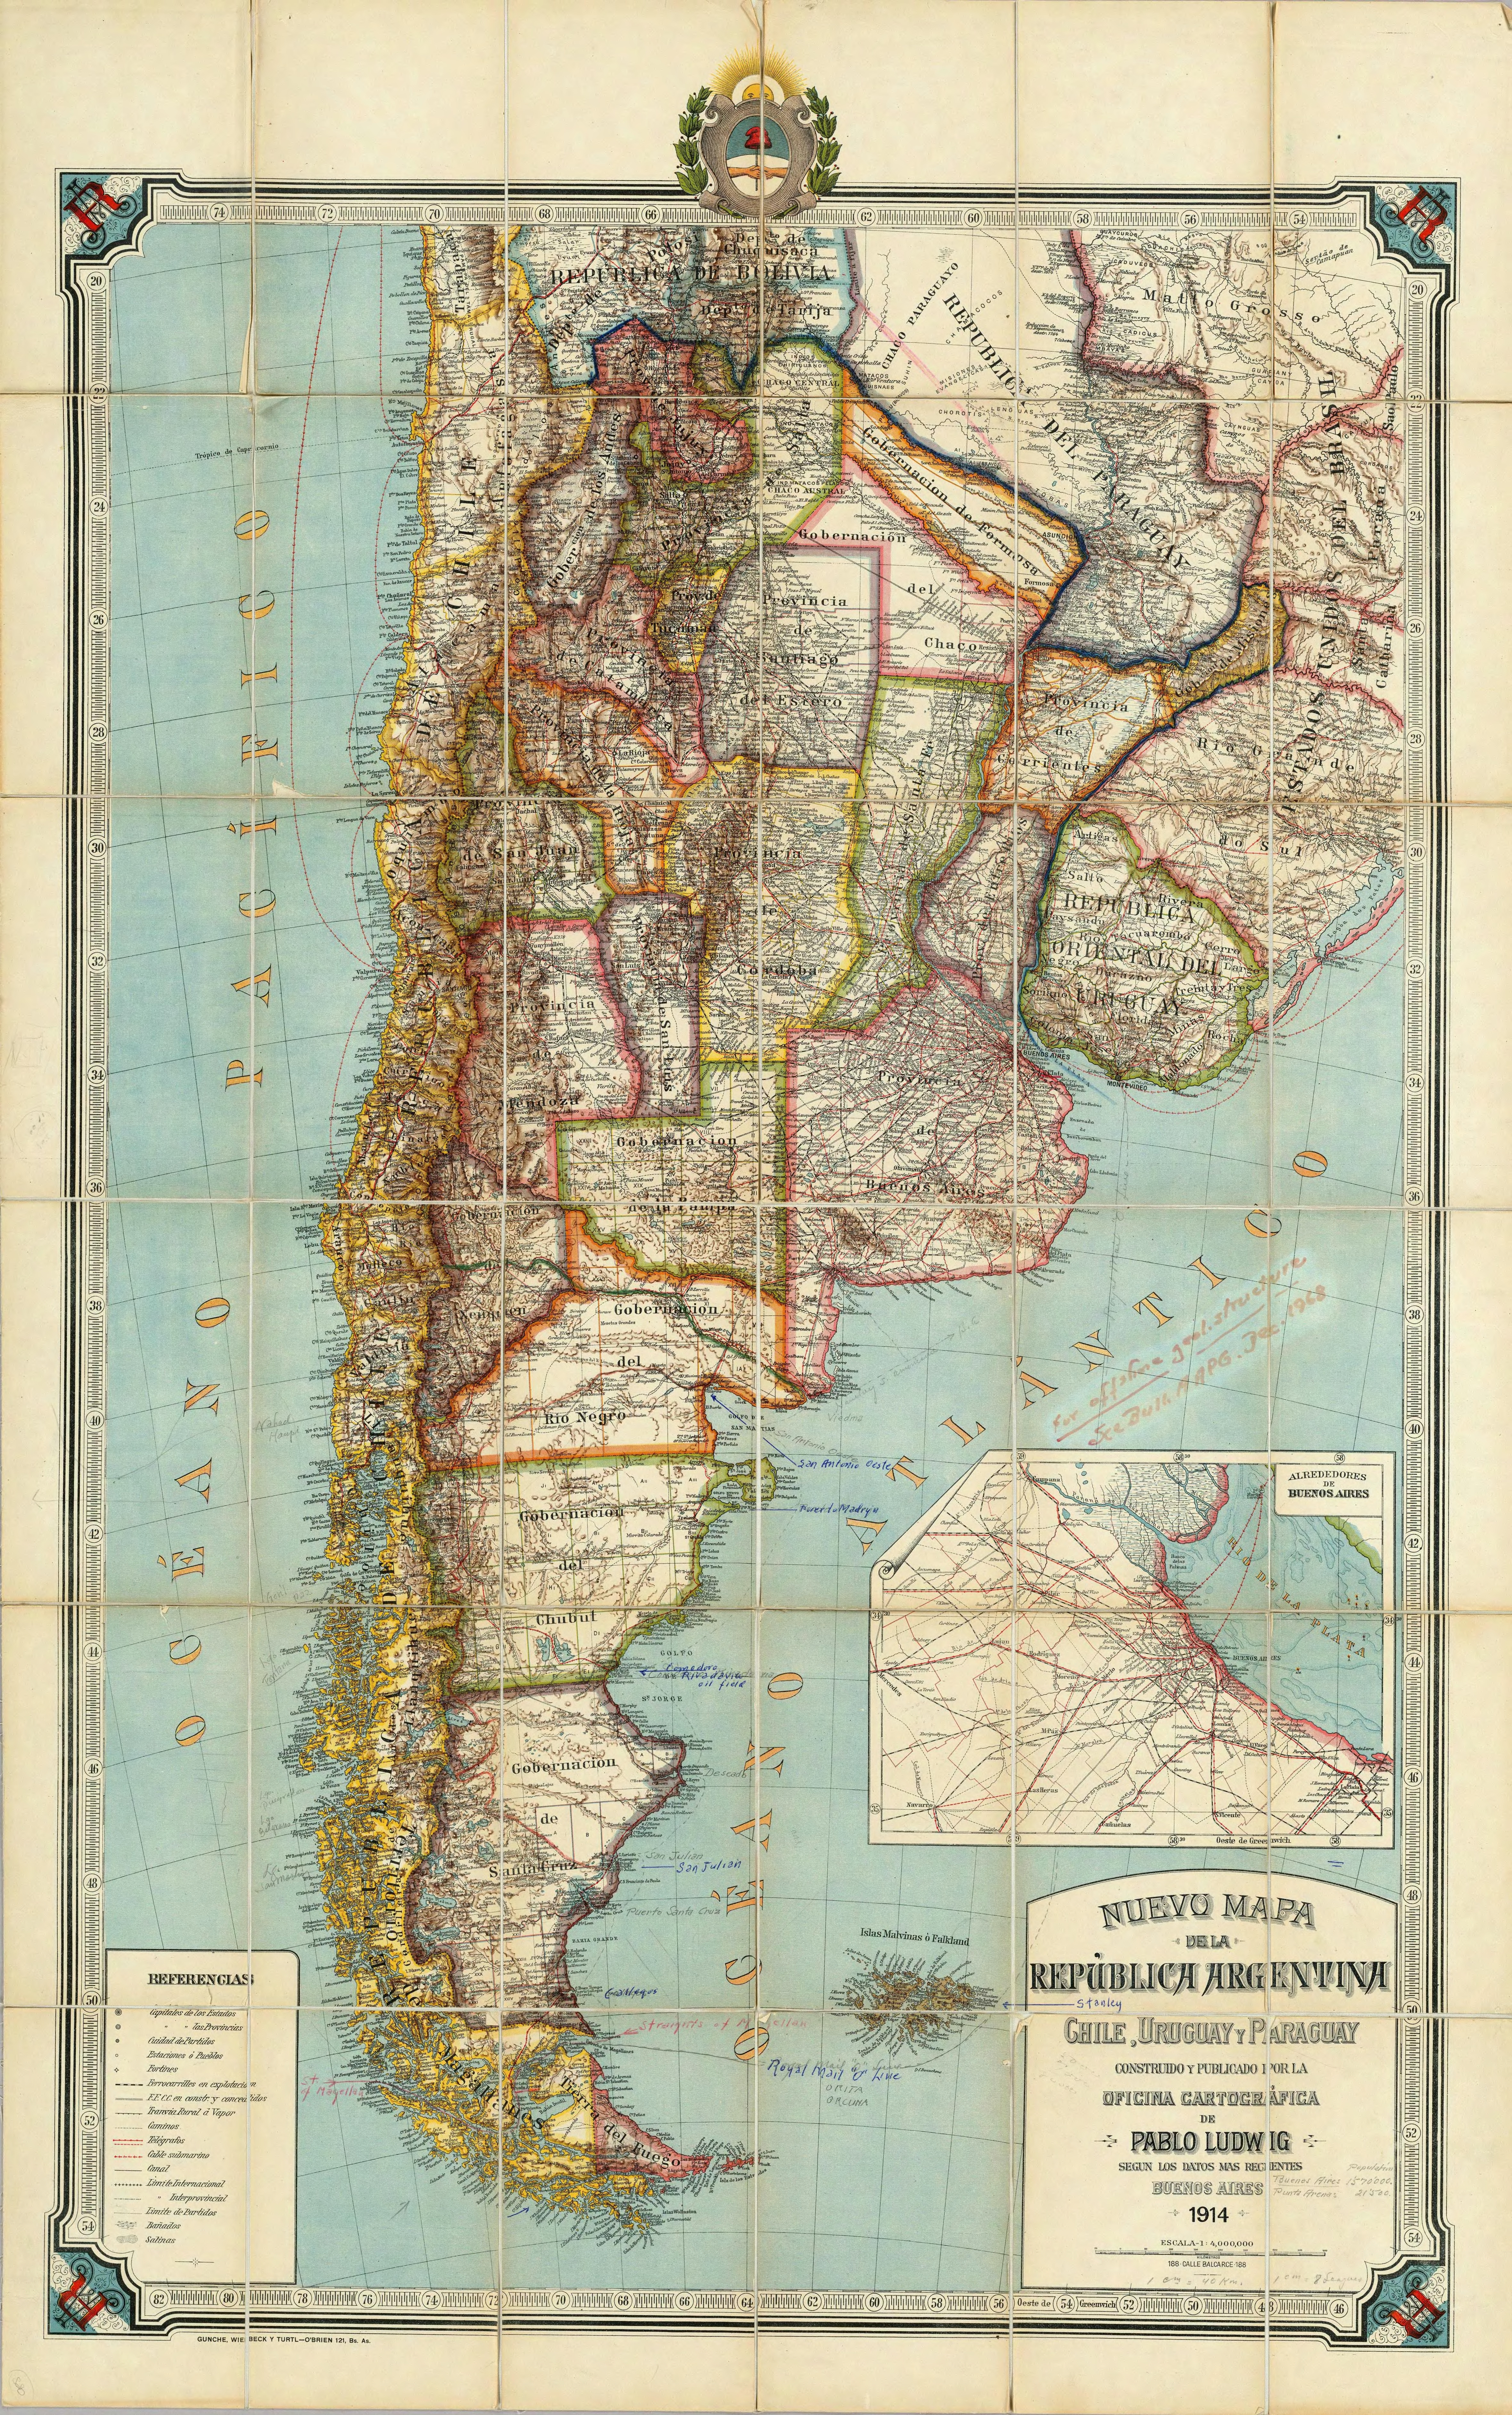 https://upload.wikimedia.org/wikipedia/commons/1/1c/Nuevo_mapa_de_la_Republica_Argentina_%281914%29.jpg